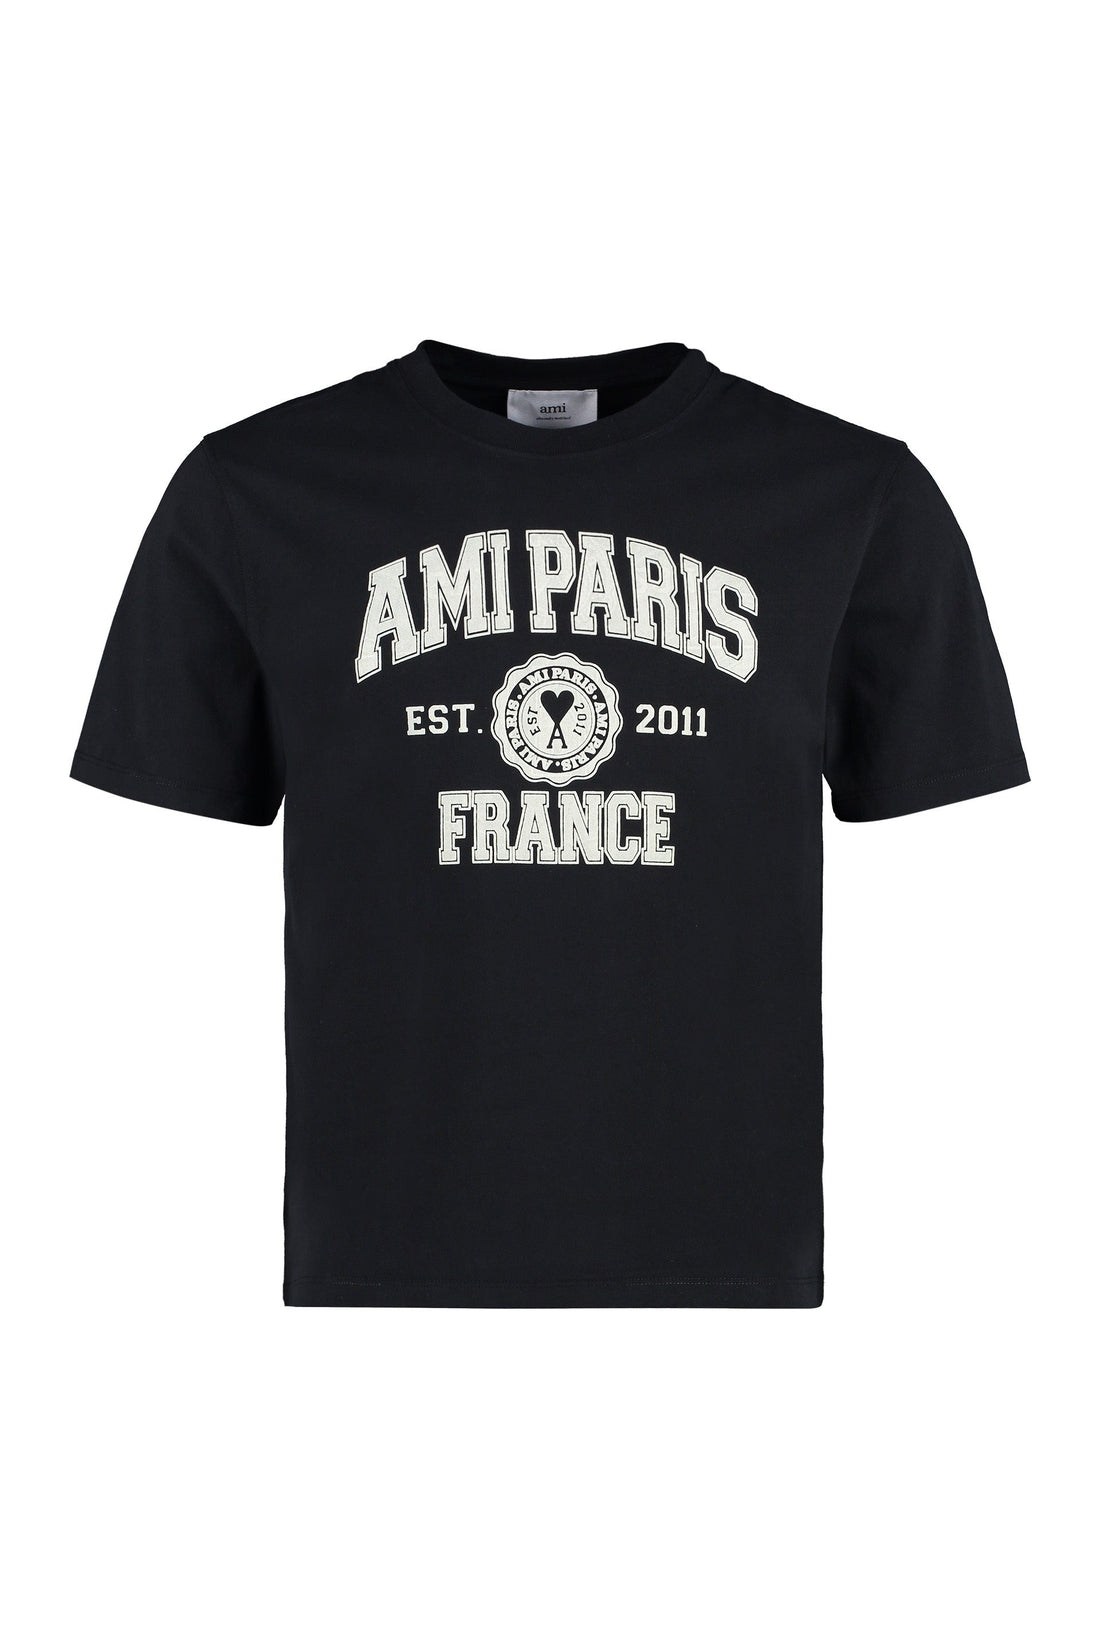 AMI PARIS-OUTLET-SALE-Logo print cotton T-shirt-ARCHIVIST